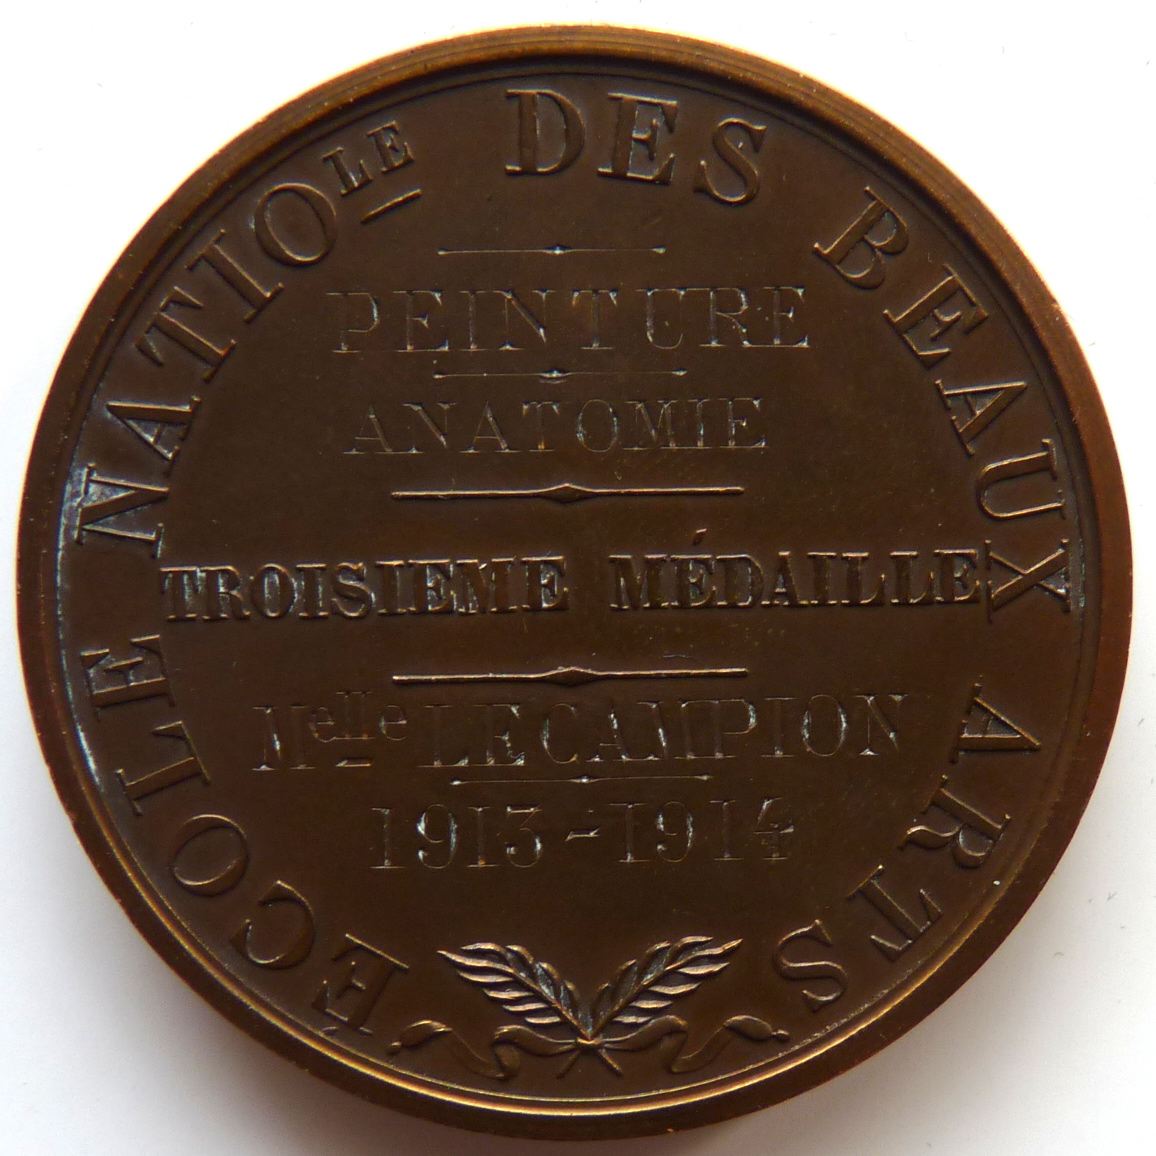 Ecole Nationale des Beaux Arts - Peinture Anatomie - Troisième médaille - Melle Lecampion - 1913-1914